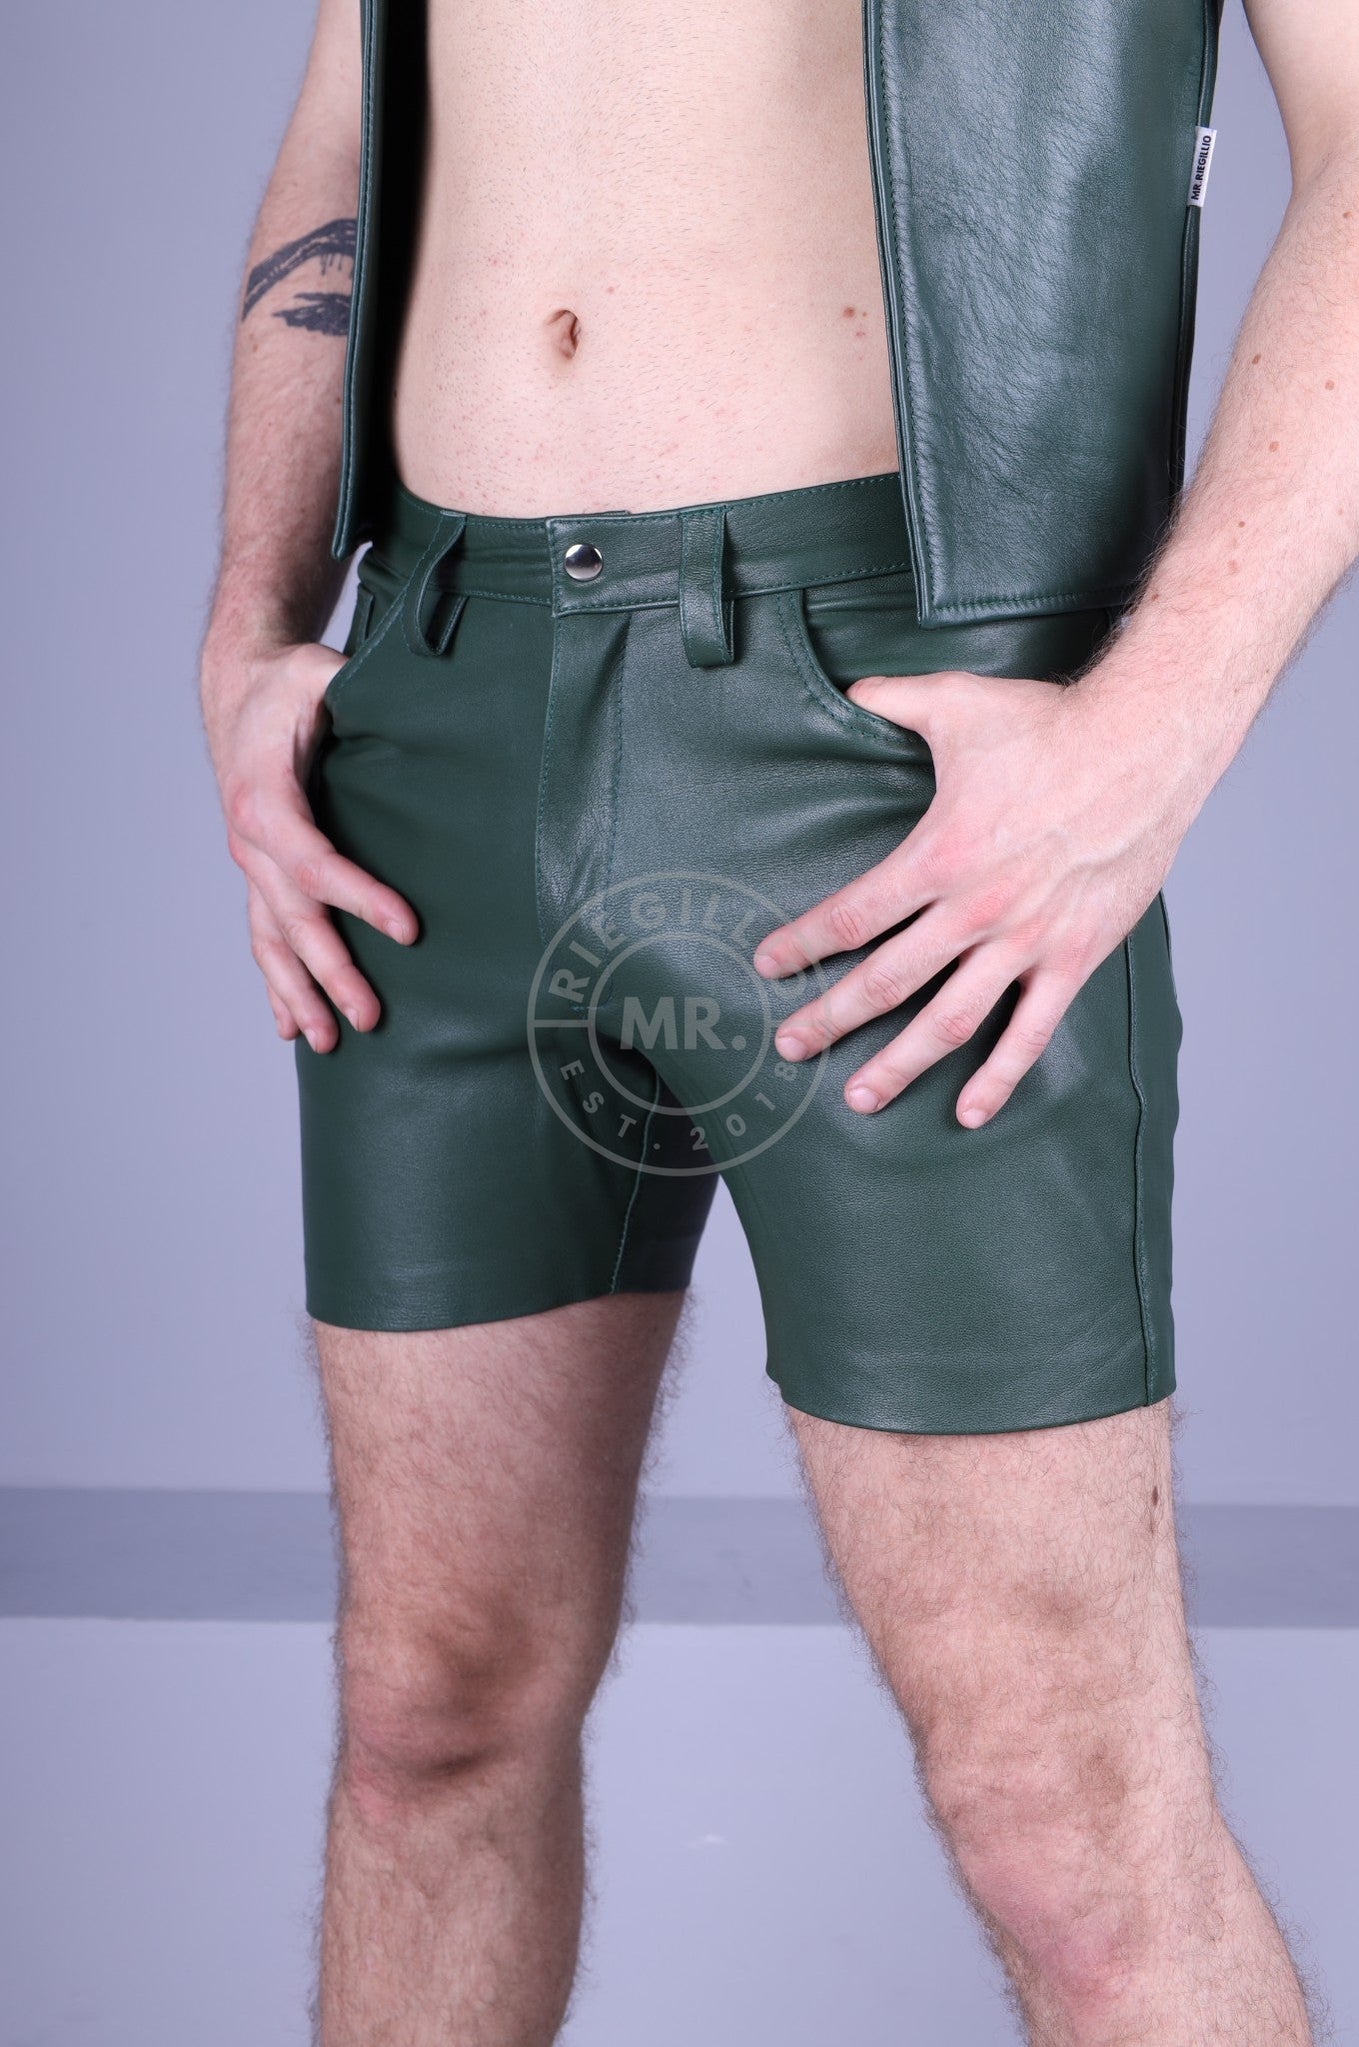 Leather 5 Pocket Short - Dark Green by MR. Riegillio